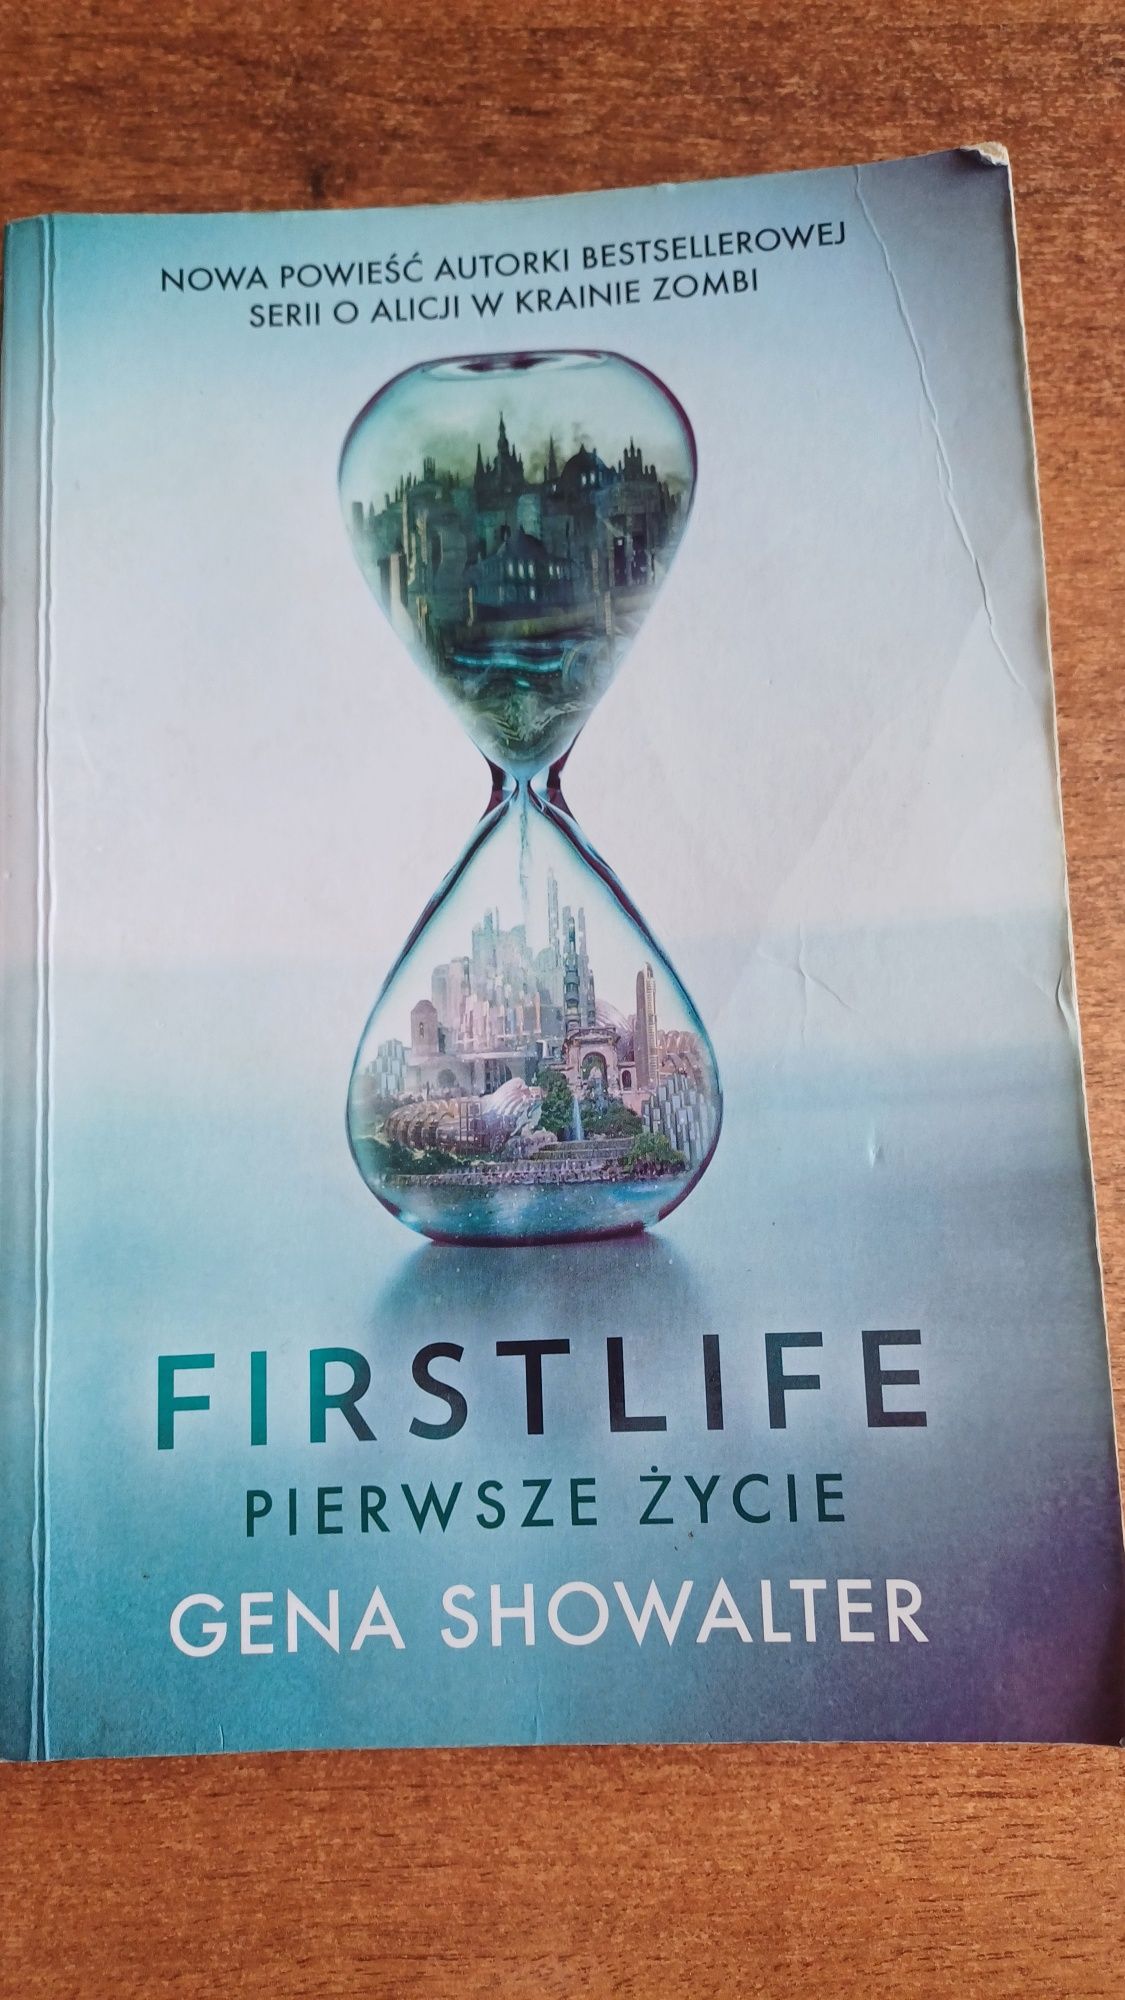 Książka "First life, pierwsze życie"